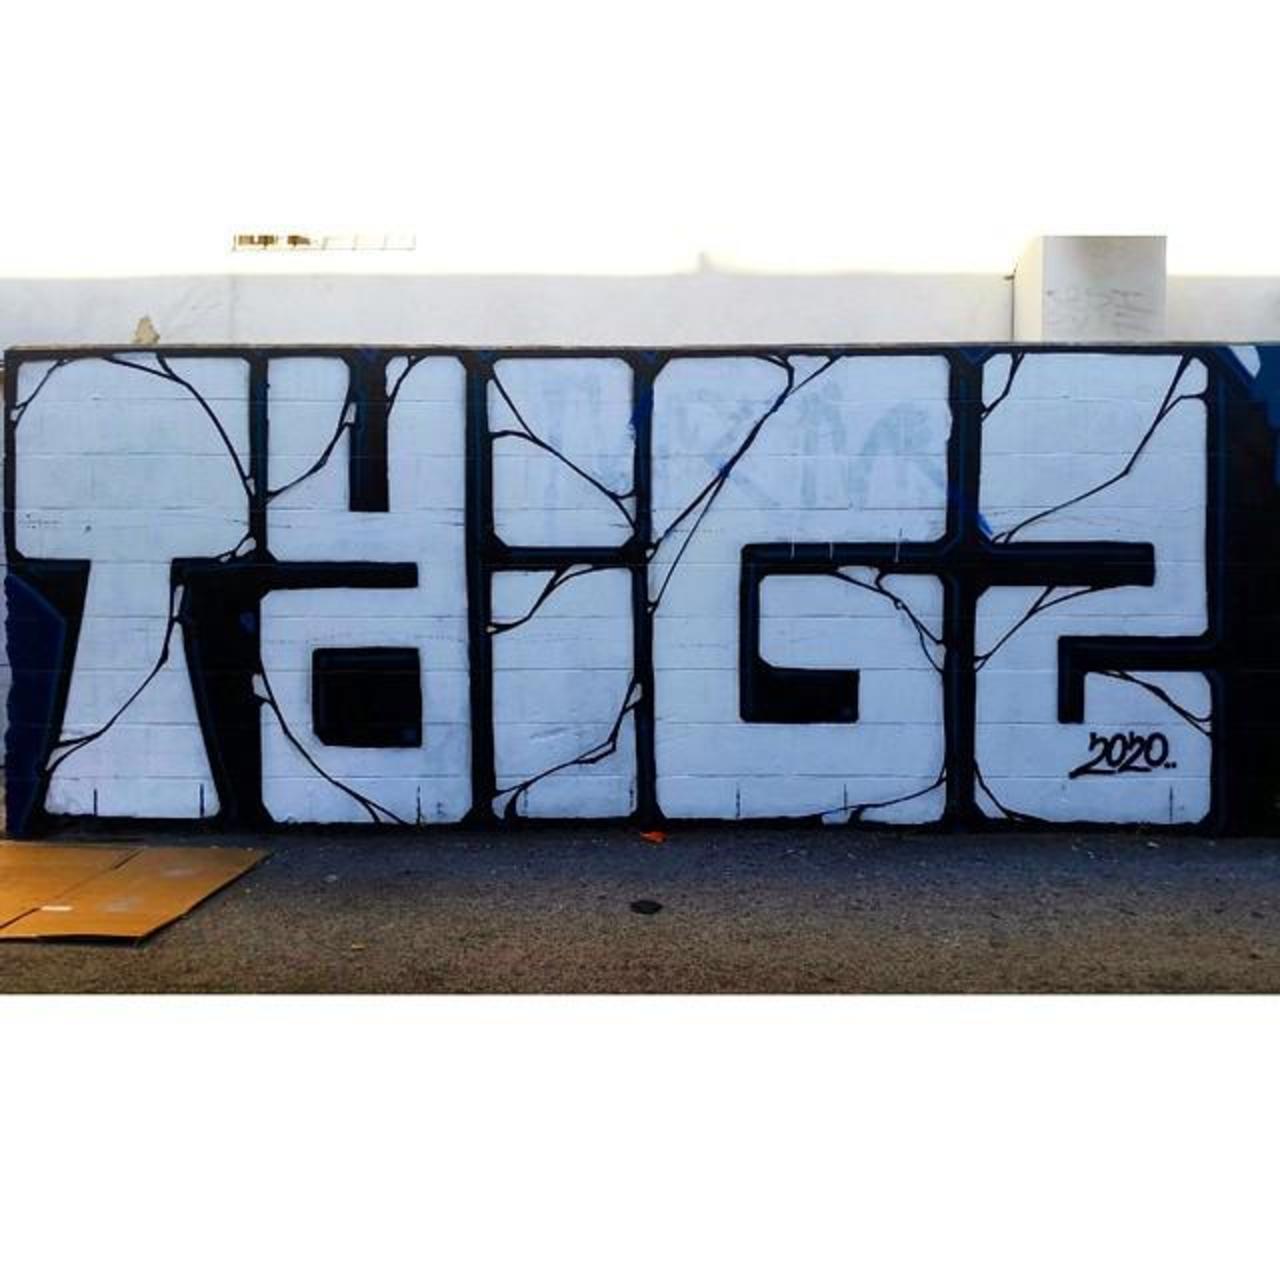 RT @graffpics: #graffpics #graffiti #trigz #RIPTrigz #tribute #LosAngelesGraffiti #LAgraff #graffiti #bombing #art #streetart #Spr… http://t.co/lQp7qMKIJS